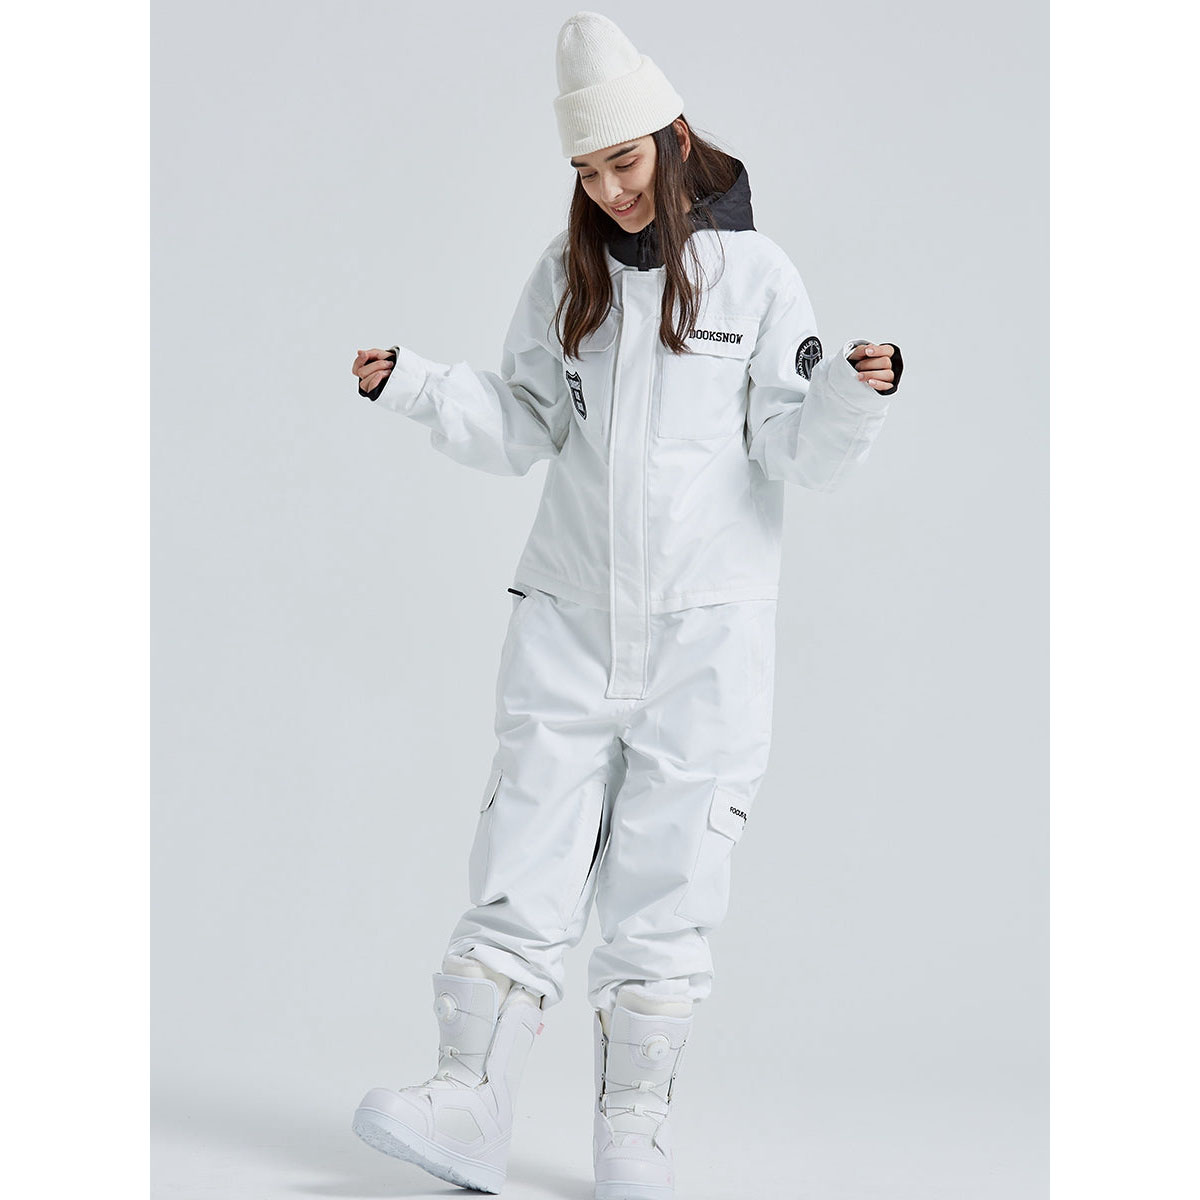 Jumpsuit Coveralls Snowboard Coats Ski Snow Suit